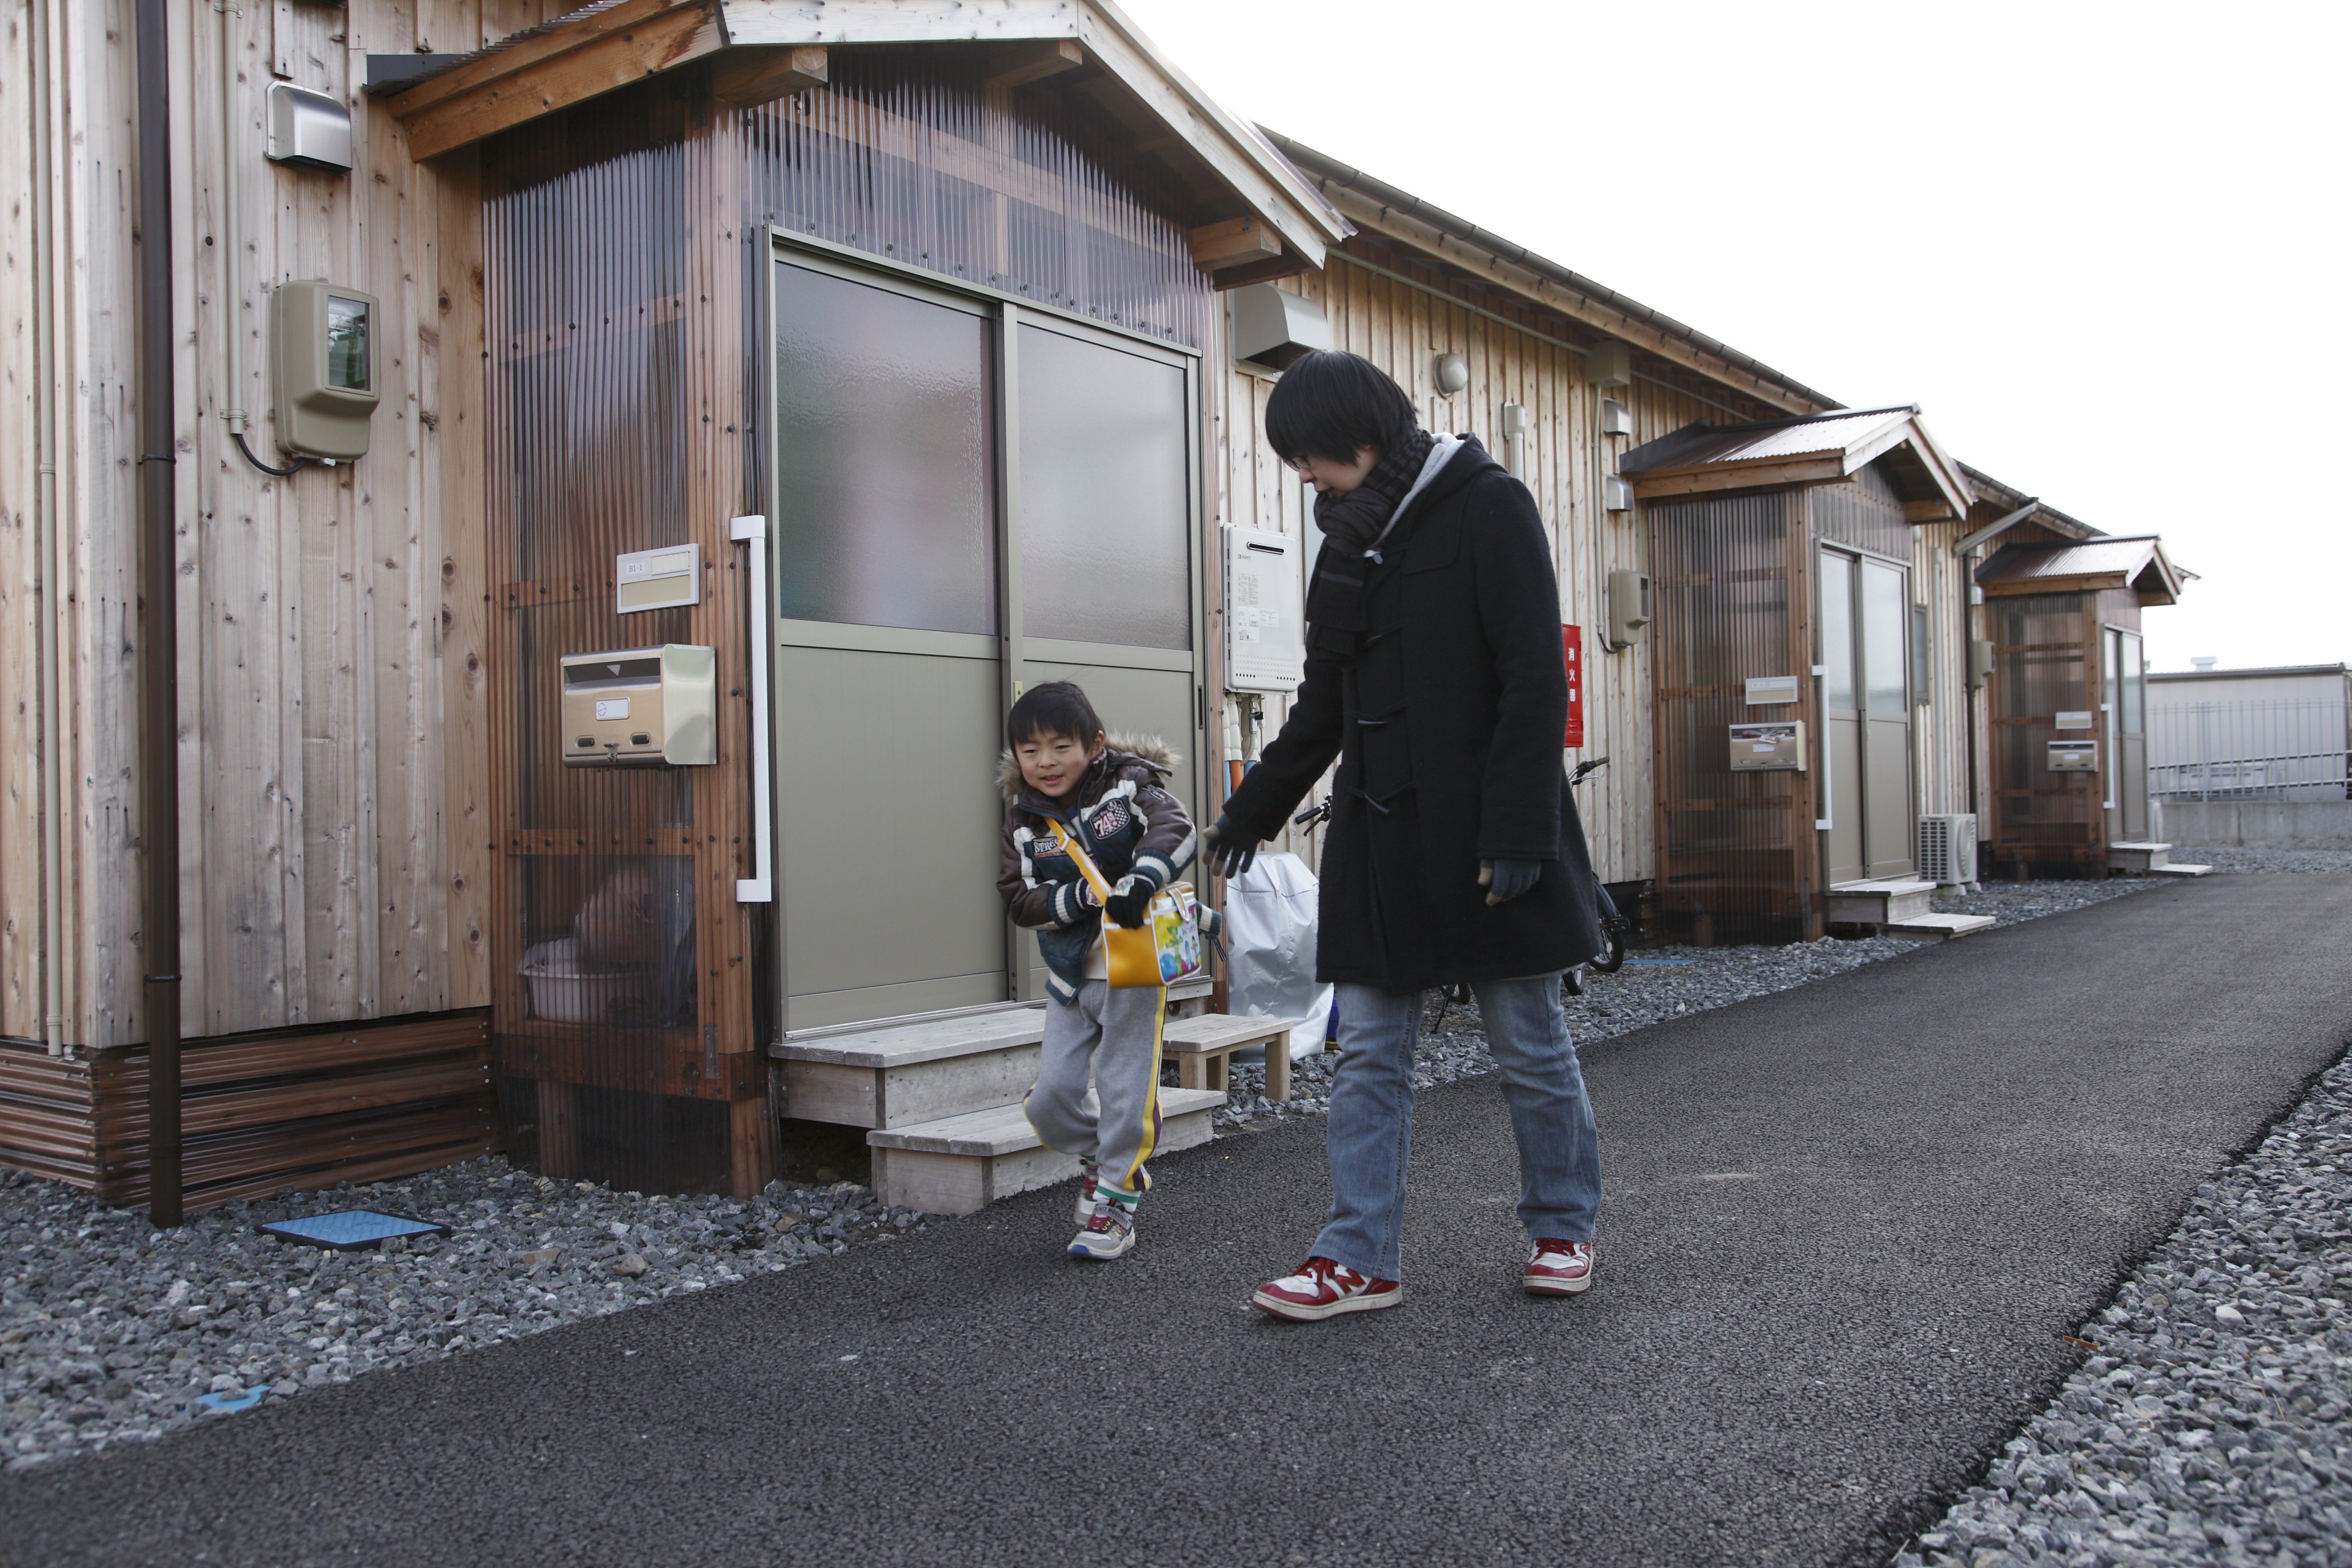 Takahito Ito, un jeune garçon de 5 ans, en compagnie de sa mère, Junko, devant leur logement temporaire dans la ville d’Iwaki. Takahito est l’un des enfants du village de Nahara qui fréquentent maintenant la maternelle temporaire. Sa mère affirme qu’il est toujours content de monter à bord de l’autobus le matin et qu’il aime beaucoup son école.